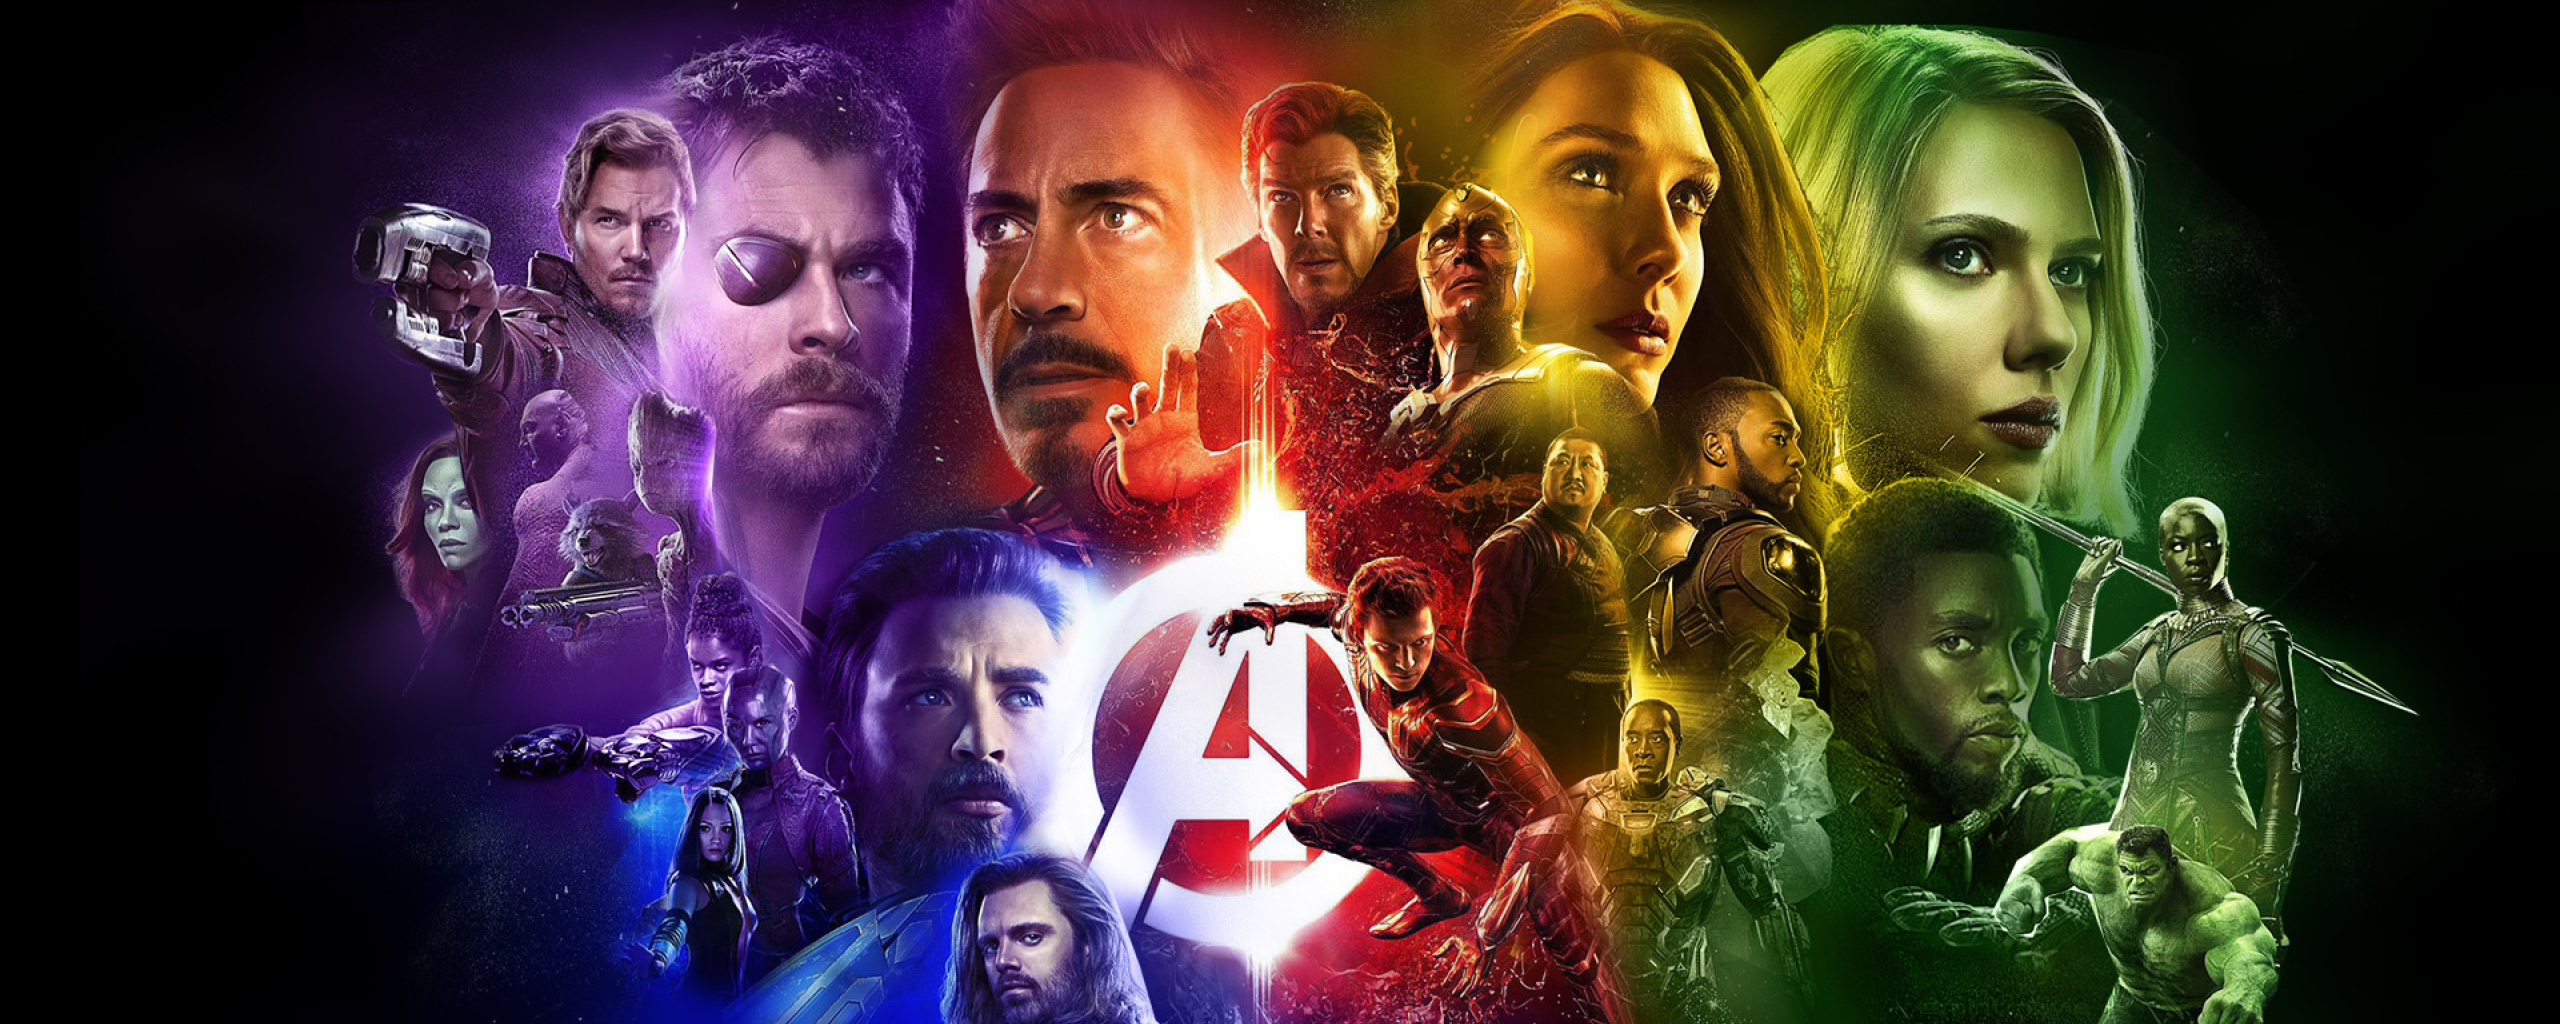 Avengers Infinity War 2018 Latest Poster, Full HD Wallpaper